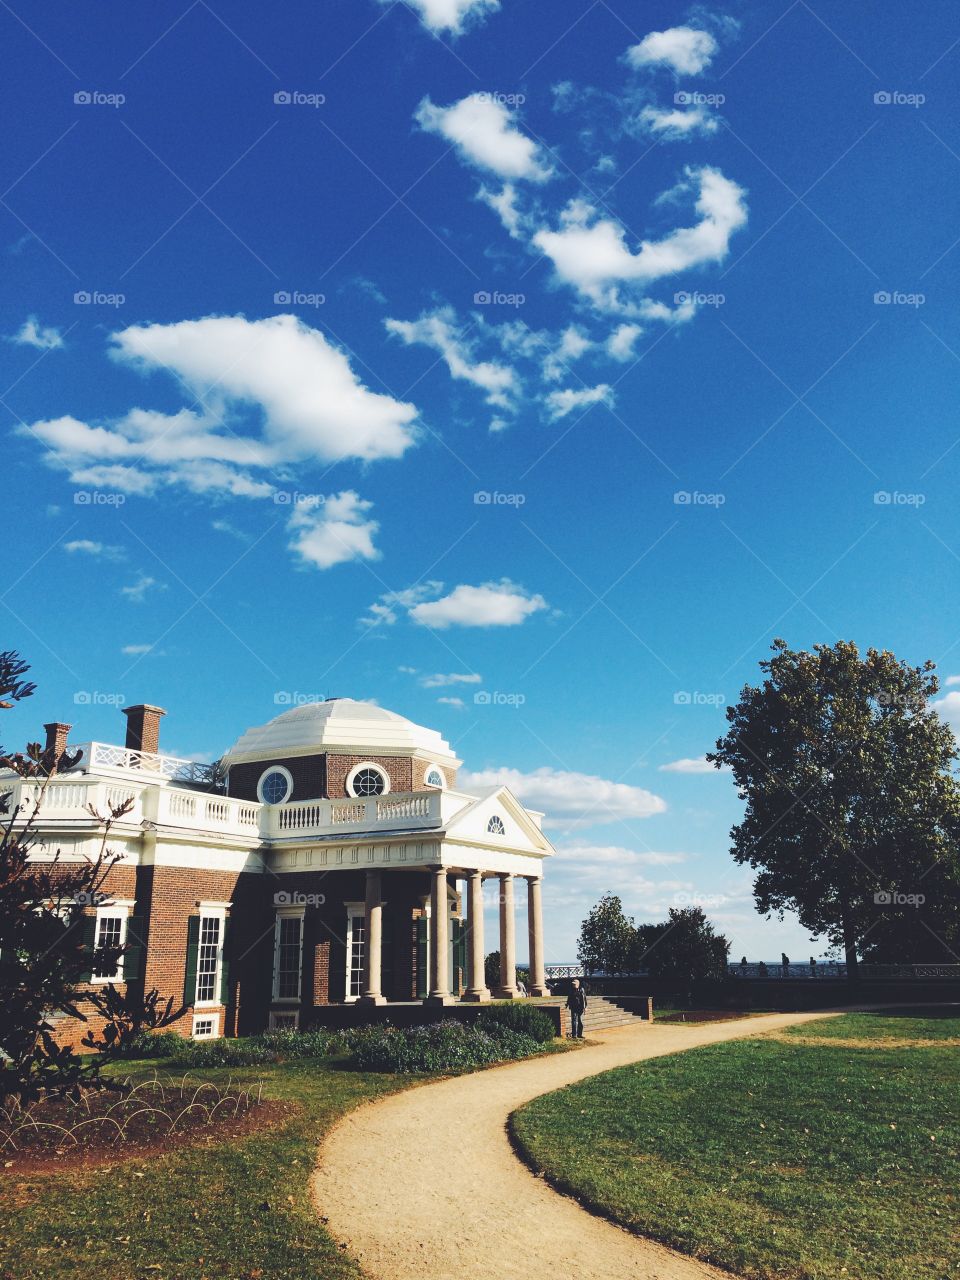 Monticello in Charlottesville VA